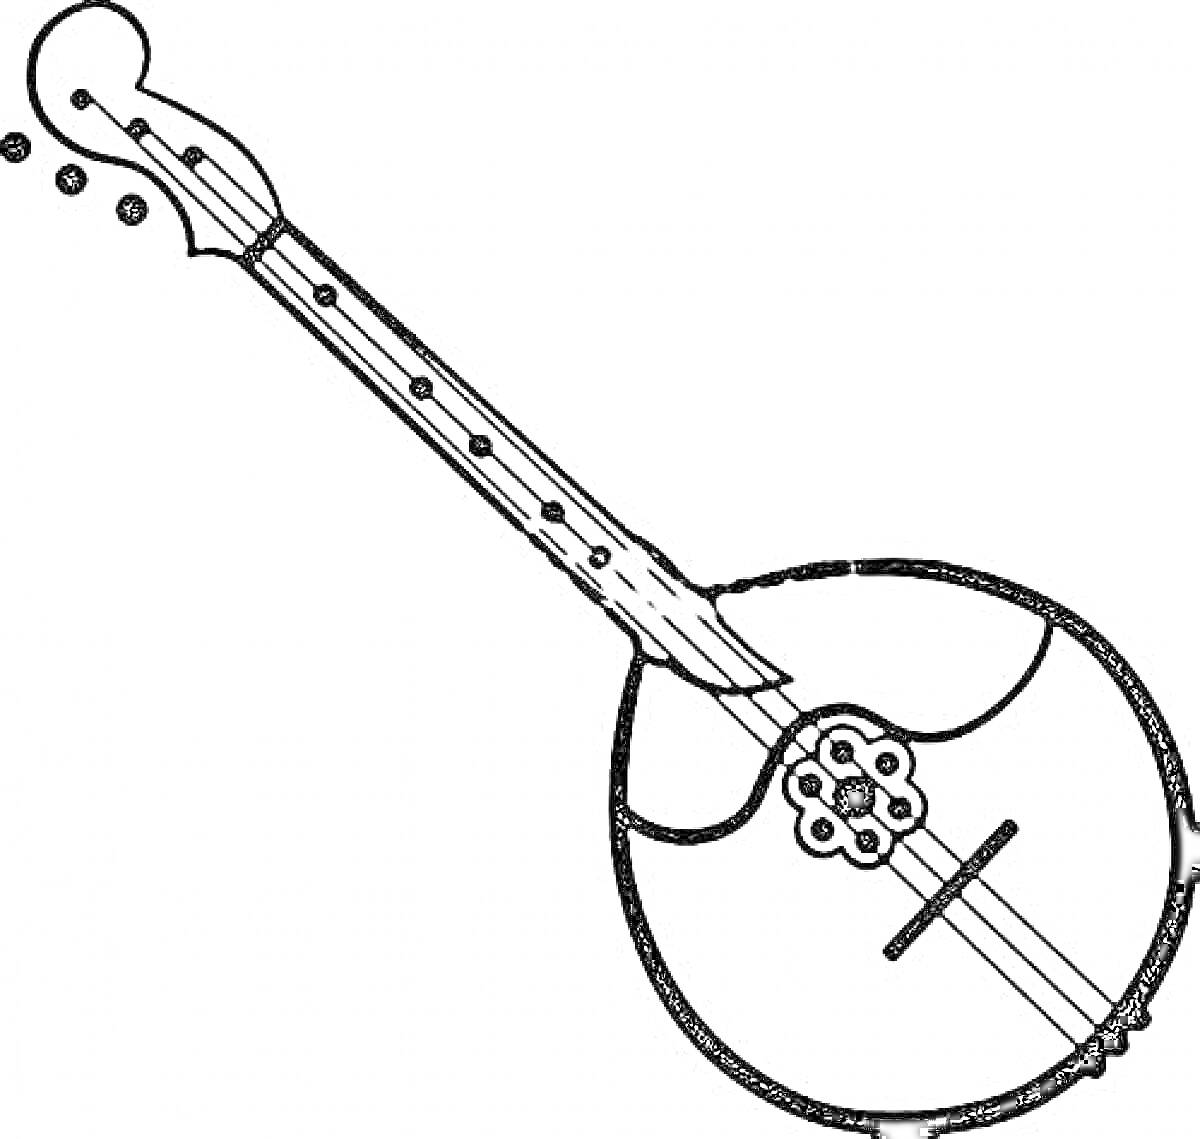 Раскраска Музыкальный инструмент с длинным грифом и круглым корпусом с декором